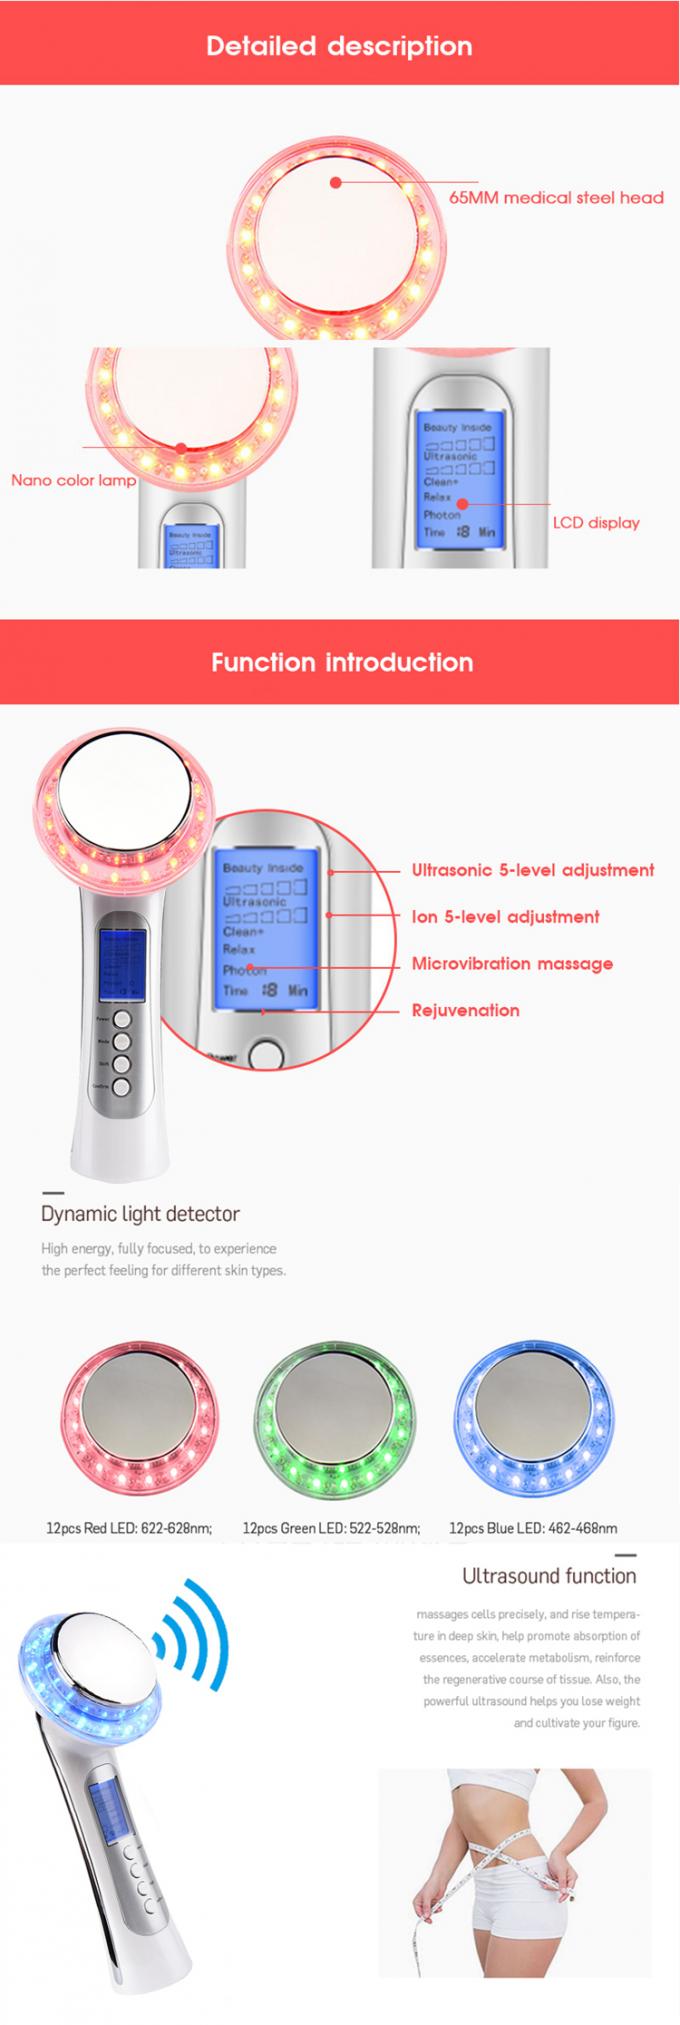 Photon Ultrasonic Ion Face Beauty Stimulator , Ultrasonic Face & Body Massager